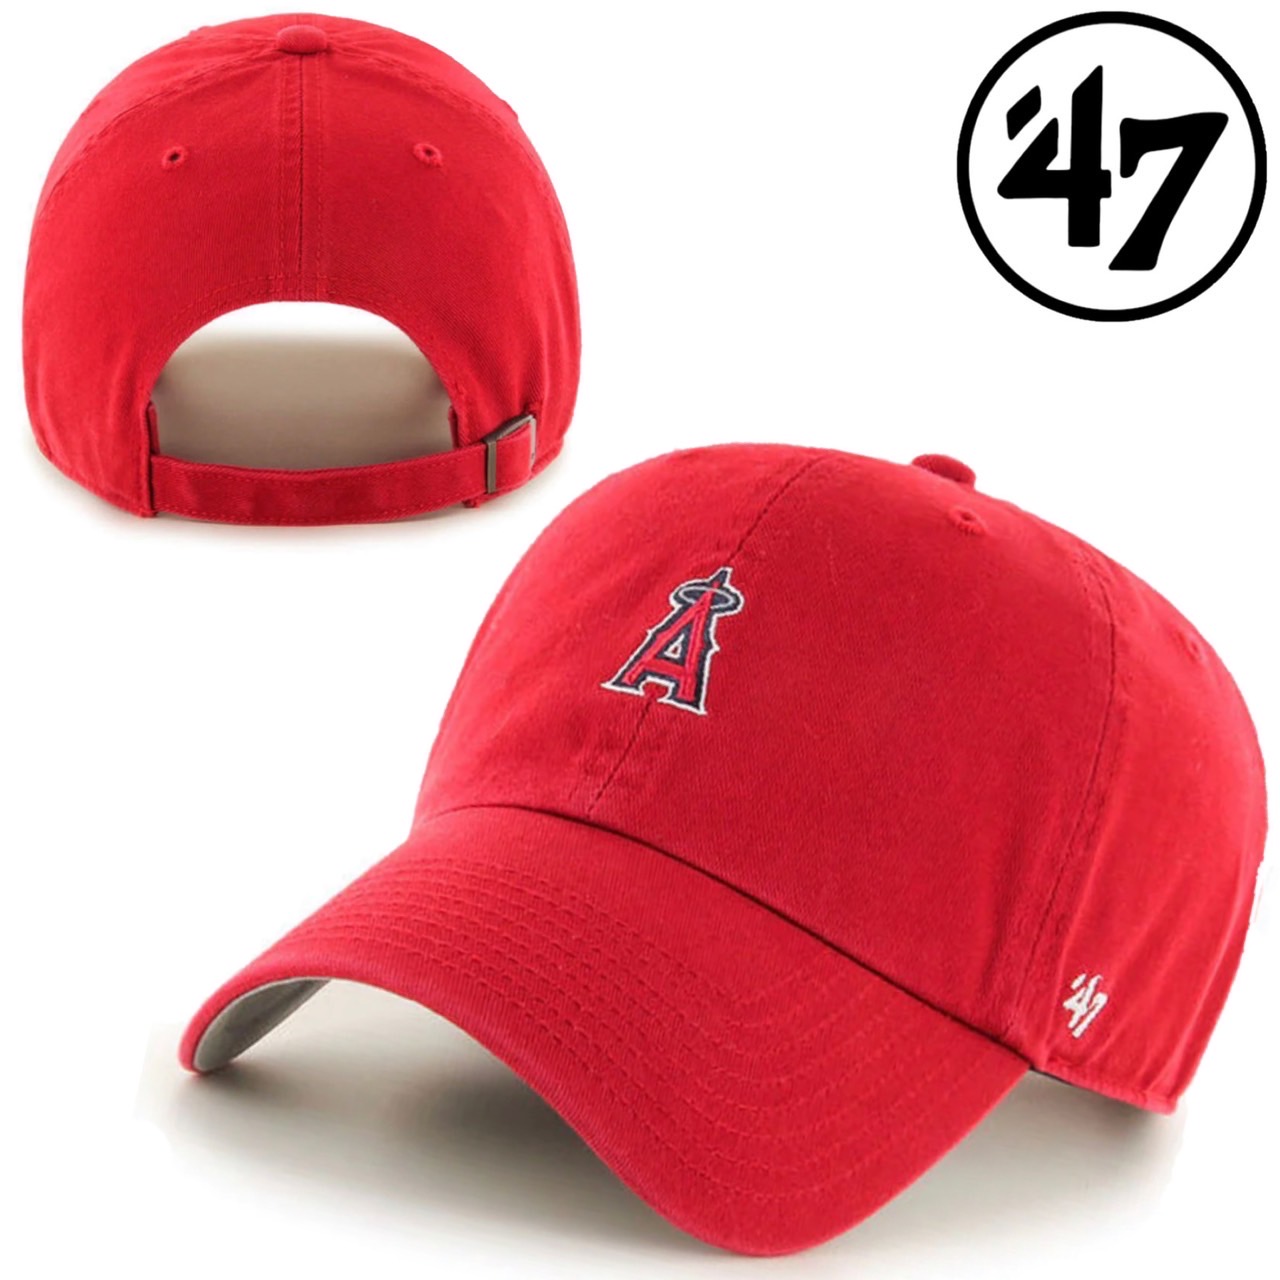 47 フォーティーセブン ブランド キャップ 帽子ミニロゴ LA ベースランナー MLB クリーンナ...